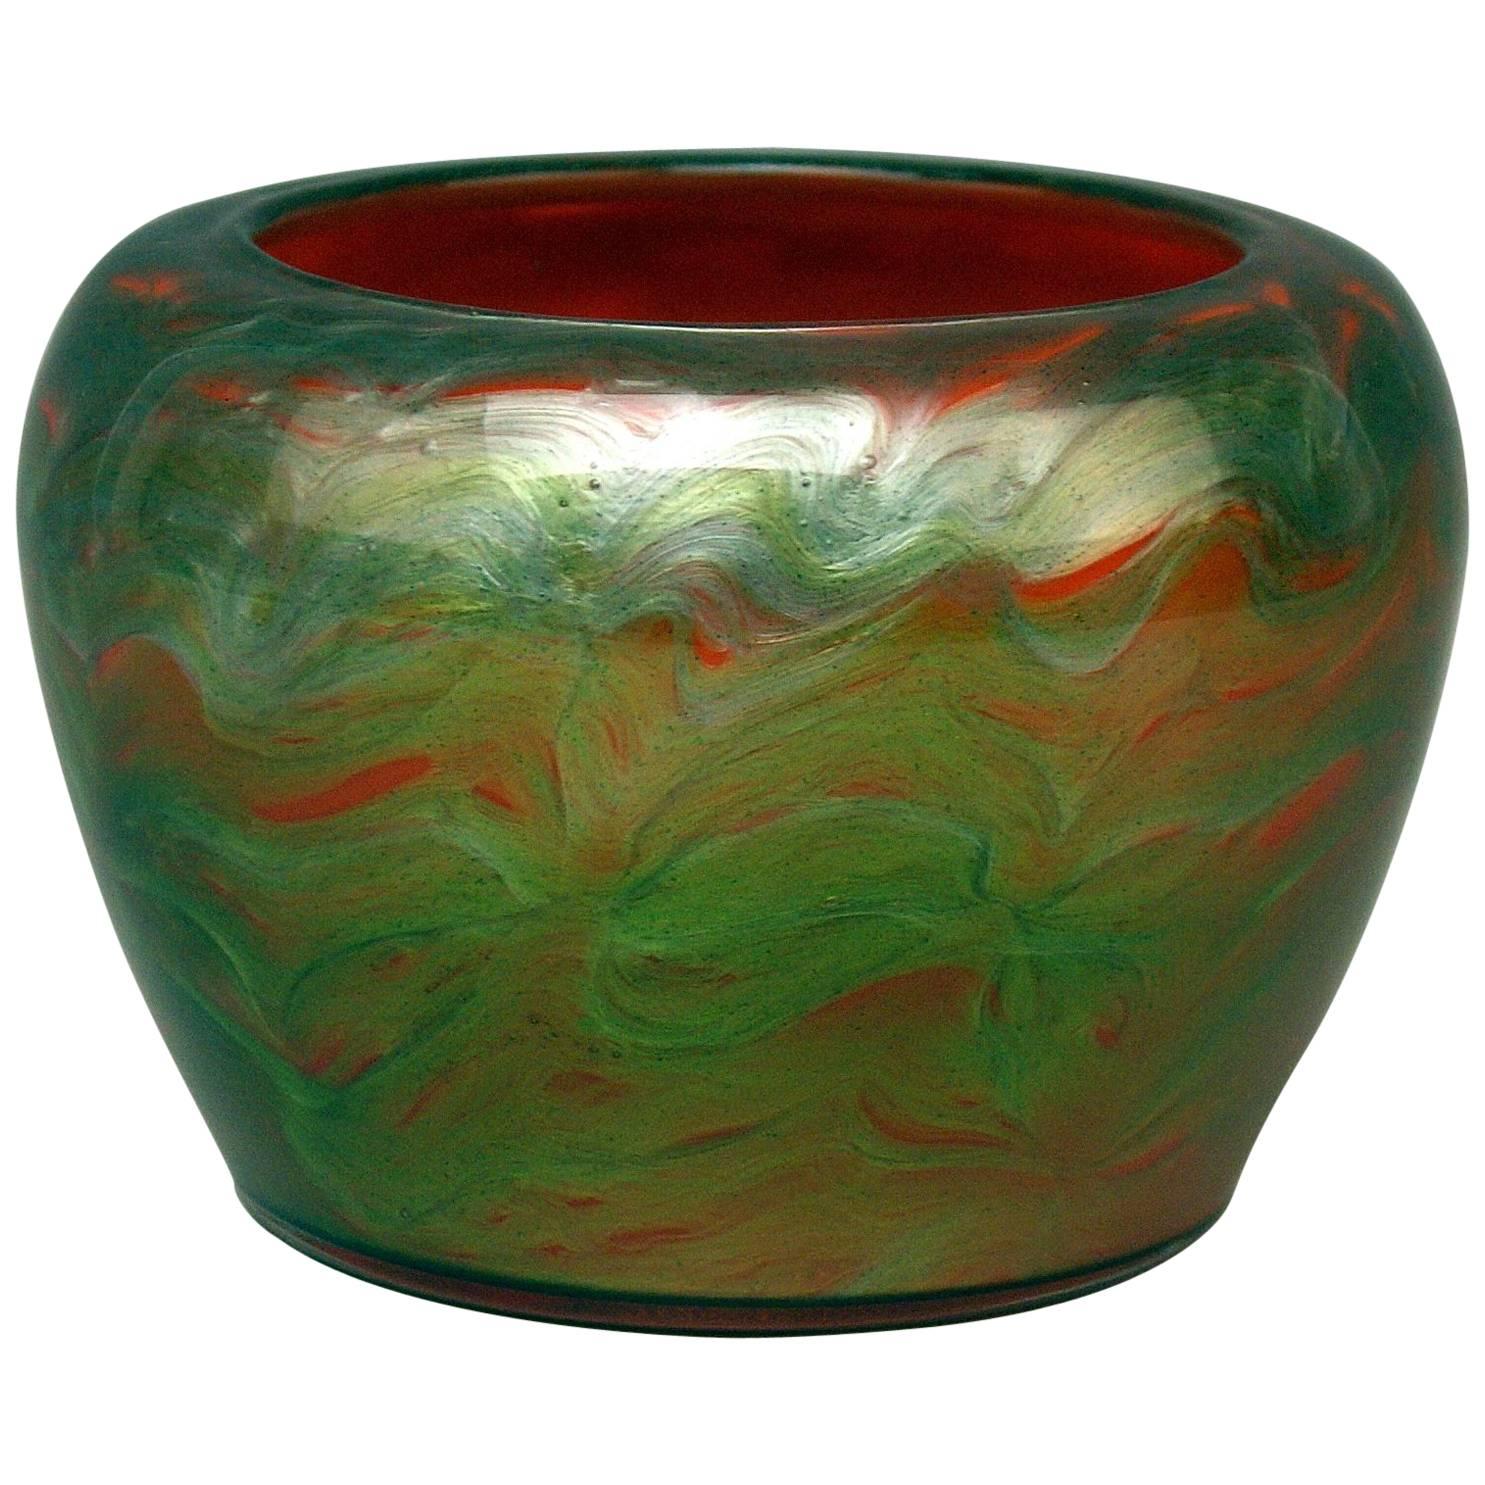 Vase Loetz Bohemia Art Nouveau Decor Titania Genre 4212 Orange Green Glass, 1906